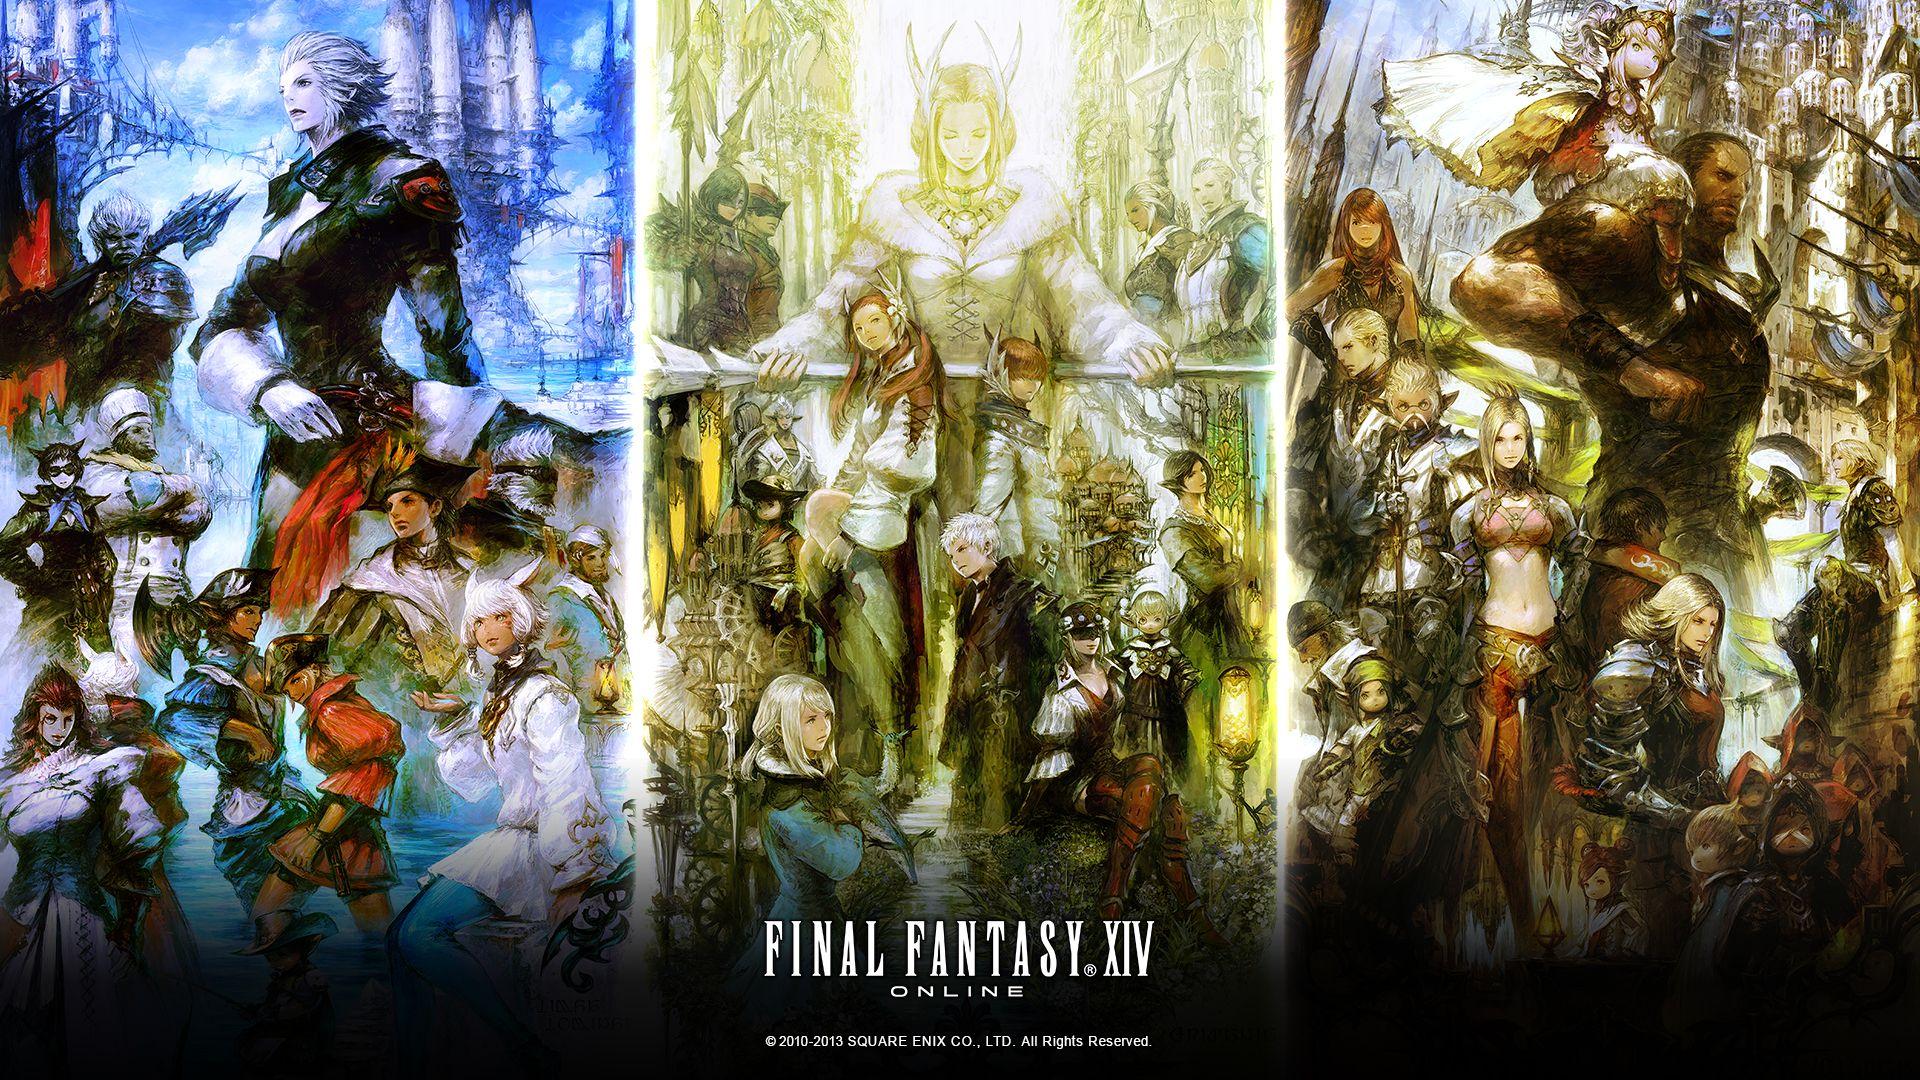 Final Fantasy XIV. FFXIV Wallpaper. The Final Fantasy